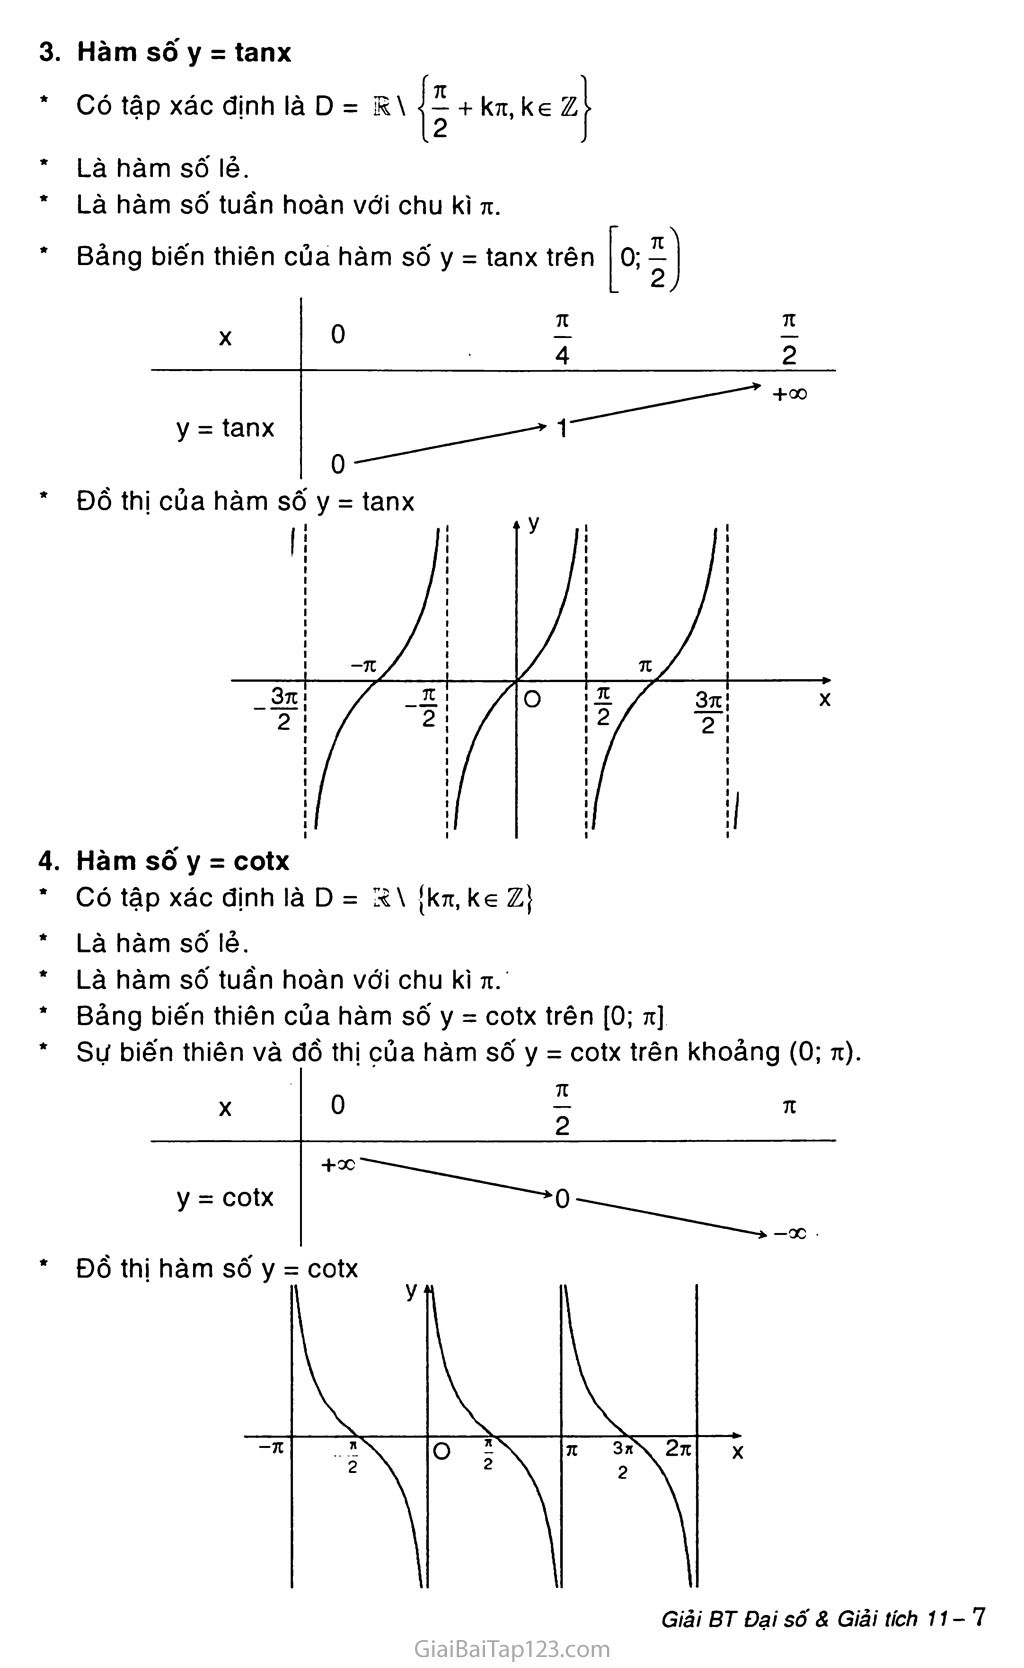 Bài 1. Hàm số lượng giác trang 3